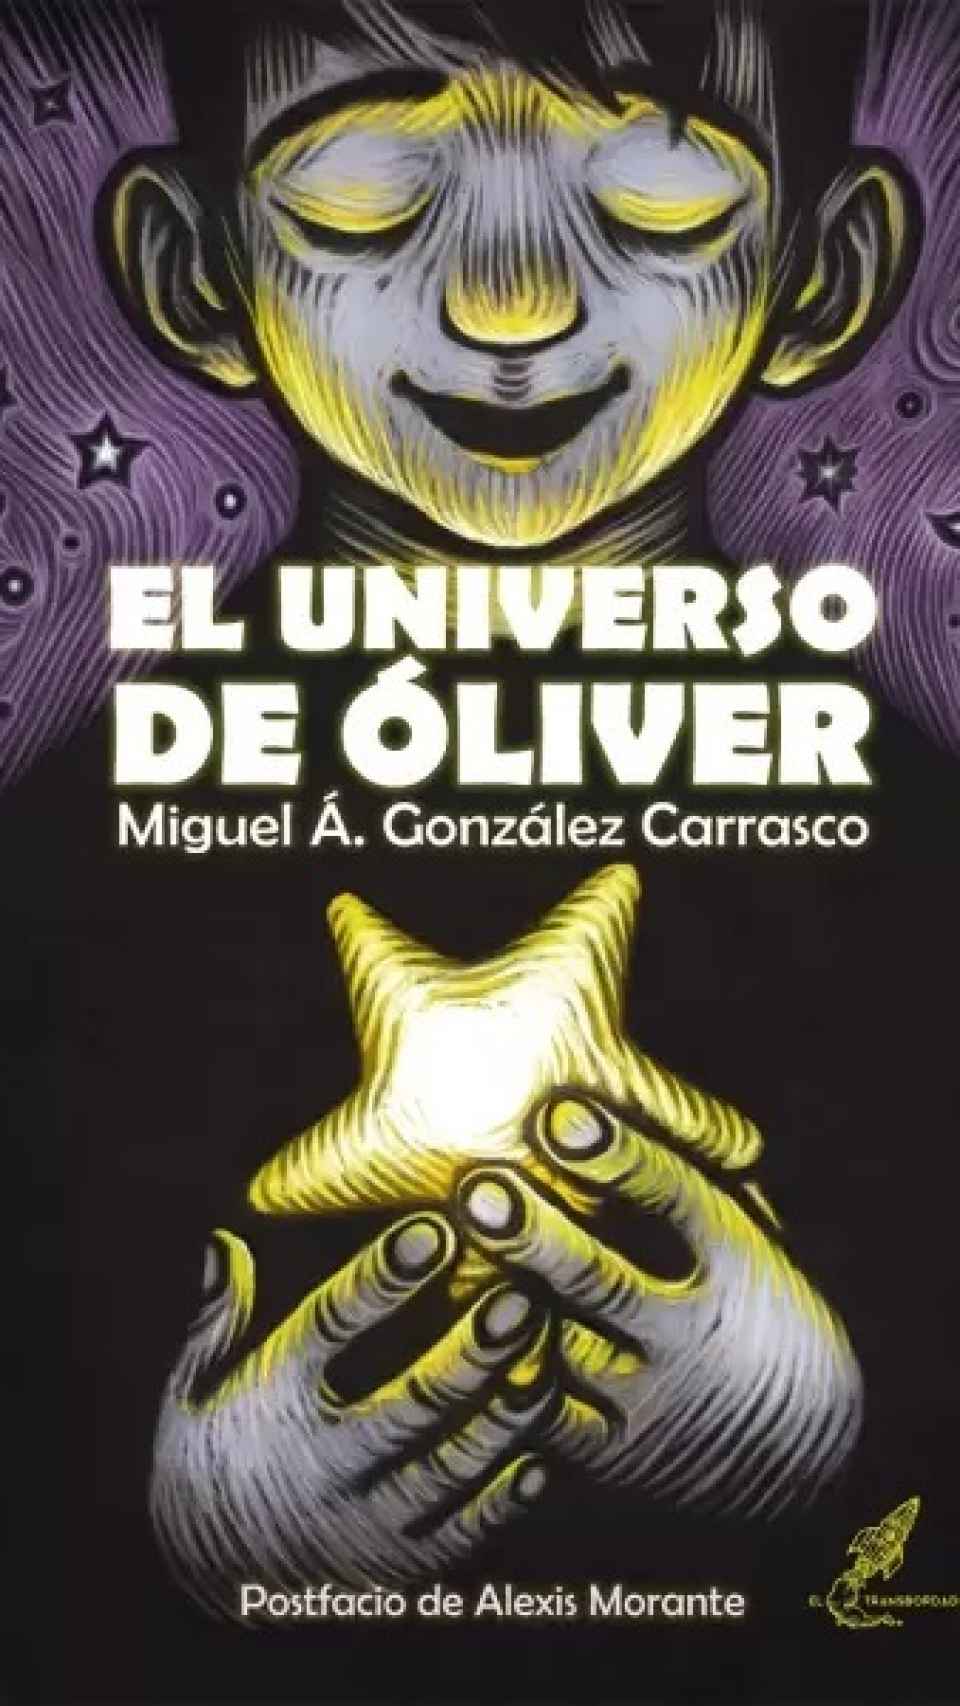 La historia está basada en una novela publicada por una editorial de Málaga.